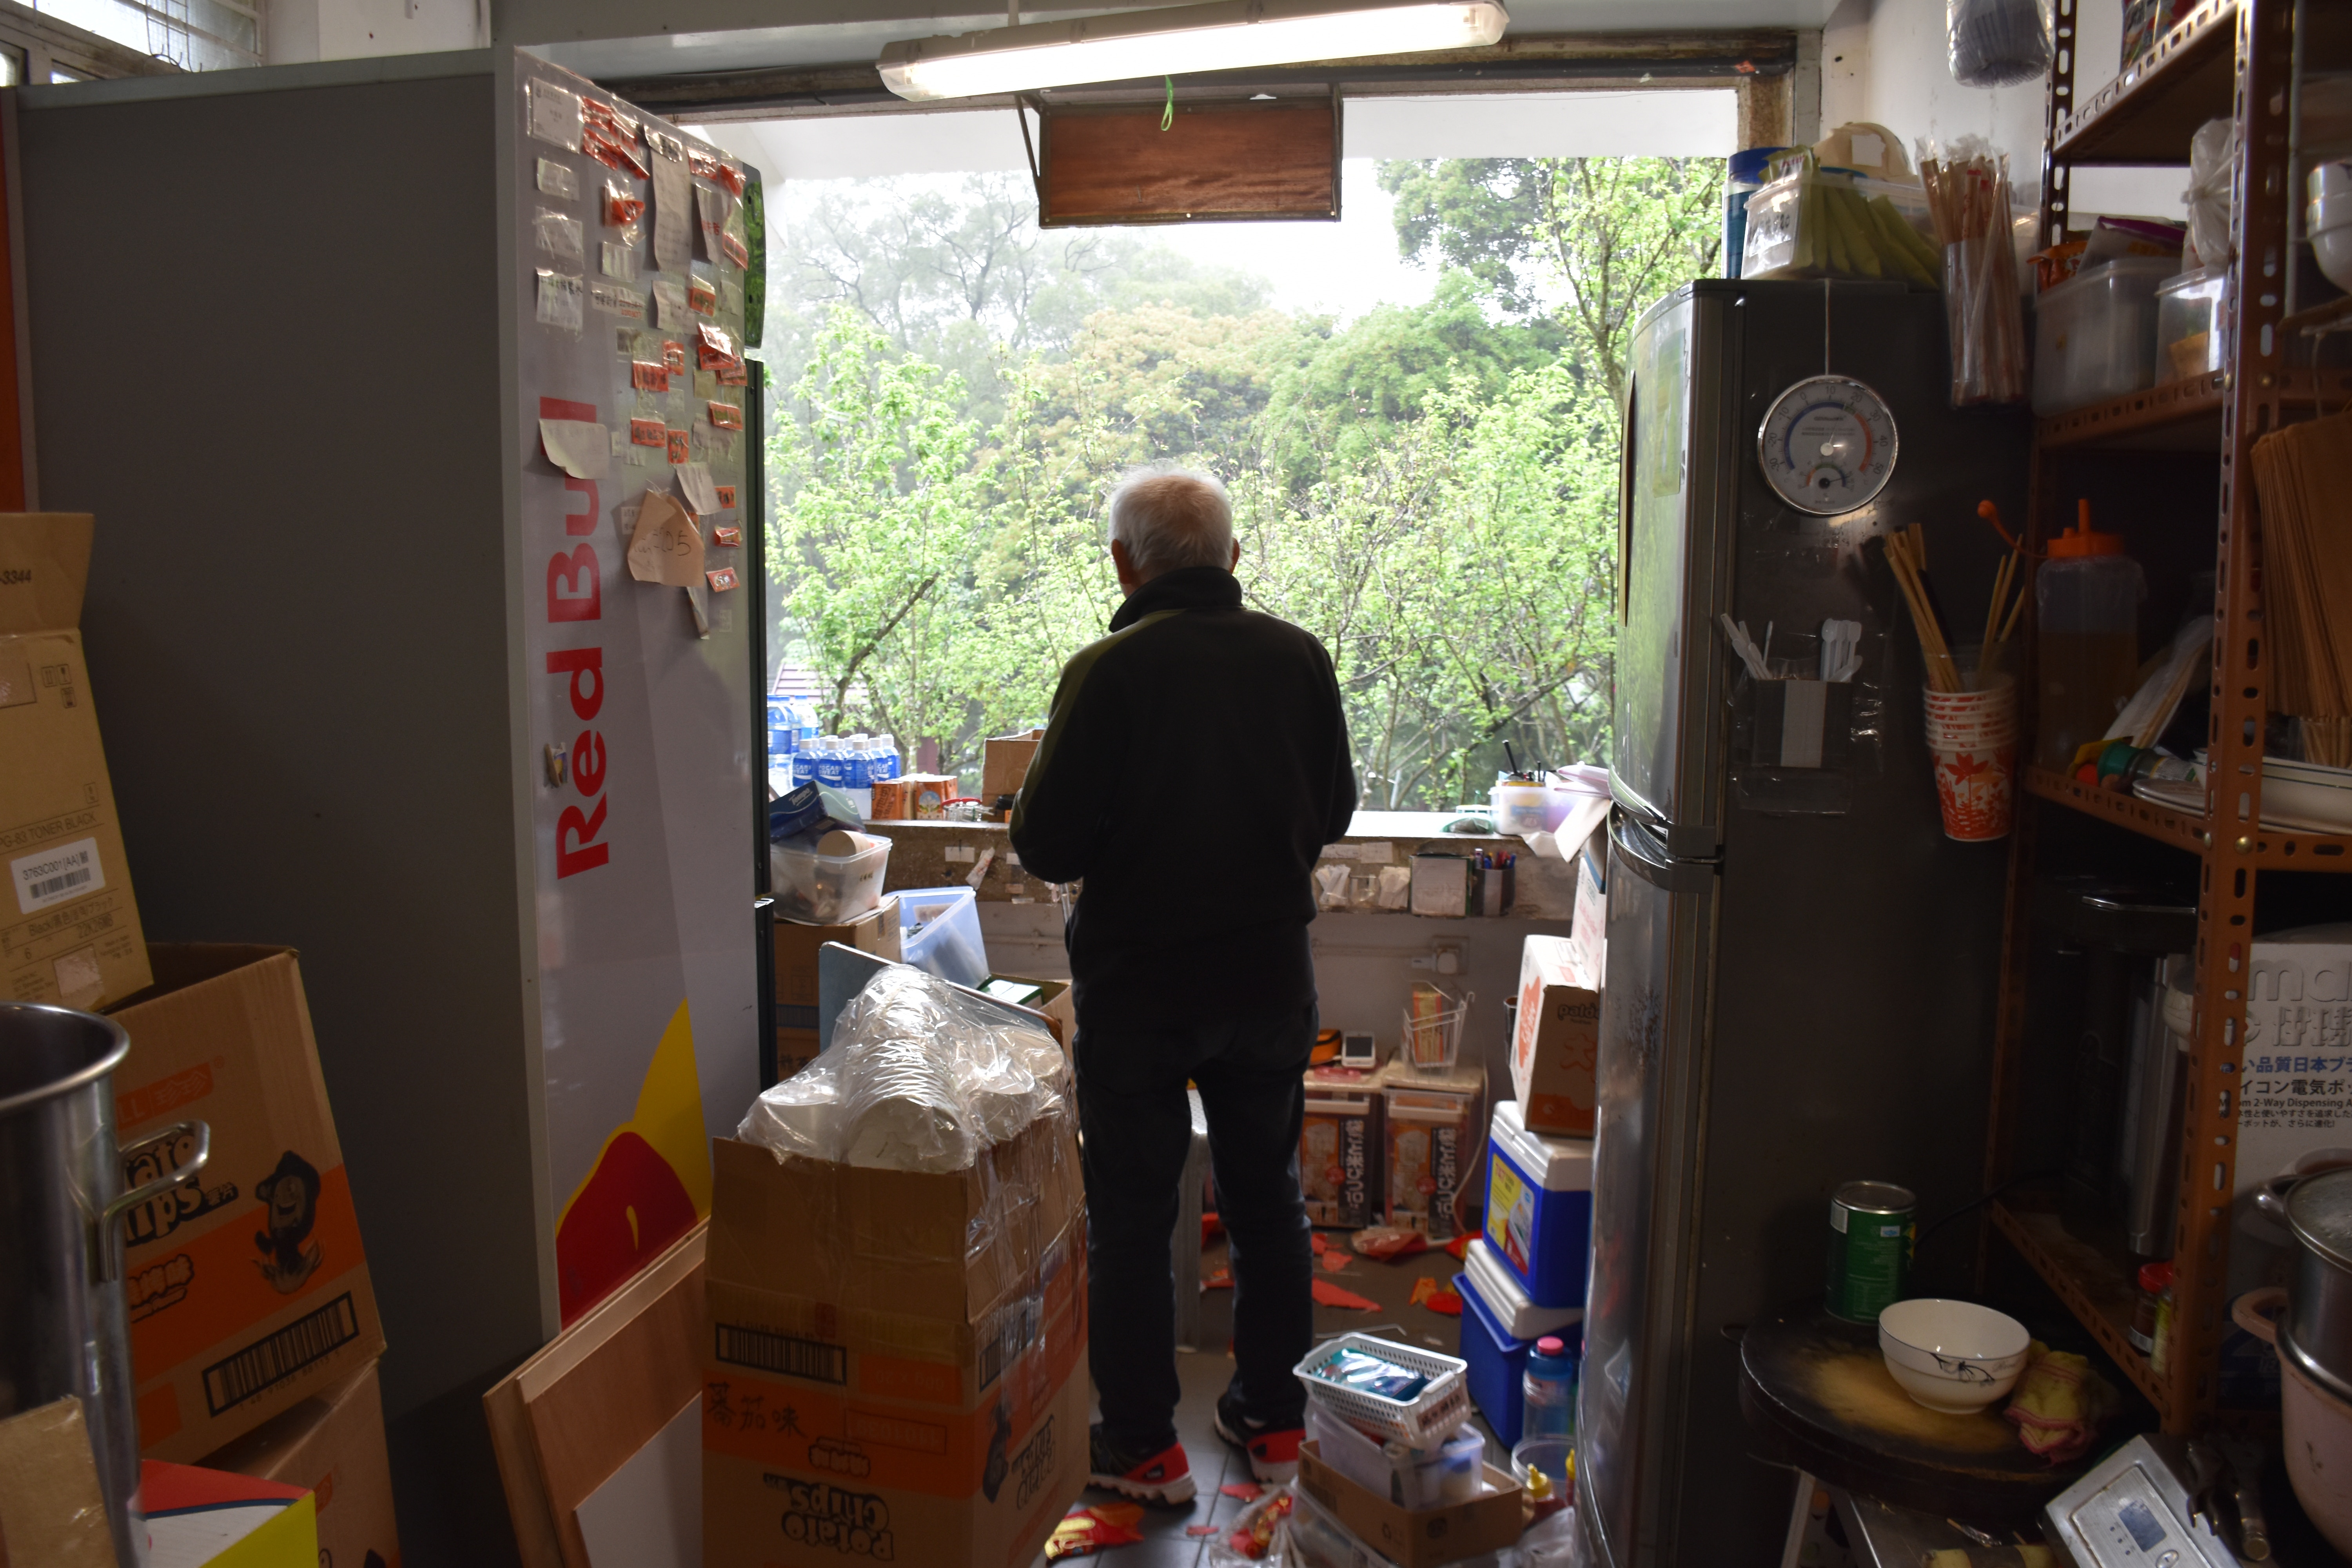 访问当日是3月28日，黄先生正忙着收拾货品，准备清空舖面交吉。（颜铭辉摄）